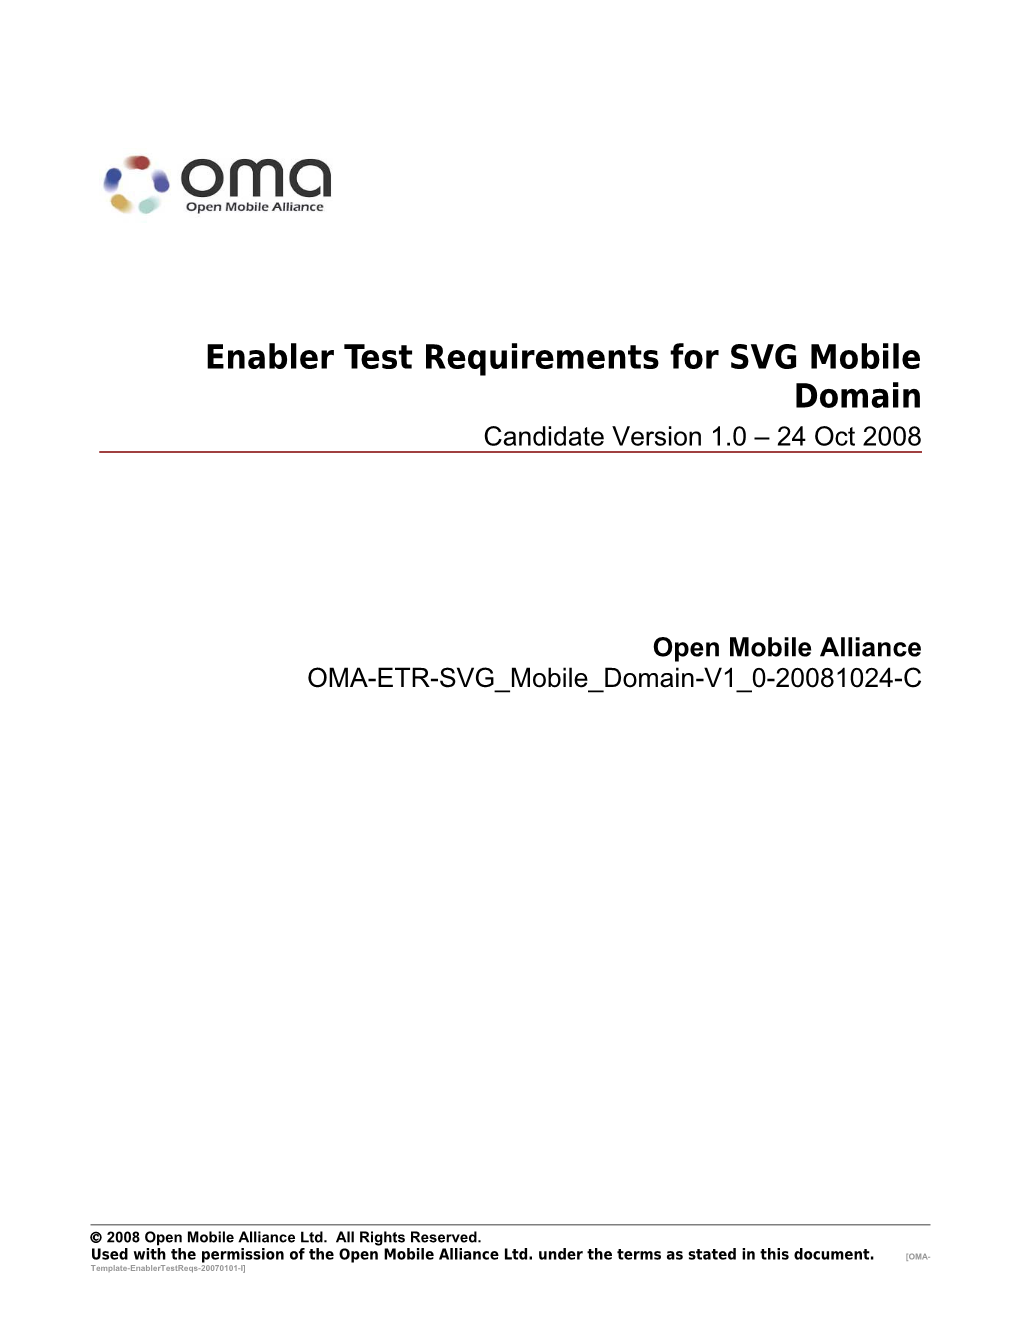 OMA-ETR-SVG Mobile Domain-V1 0-20081024-Cpage 1 V(11)